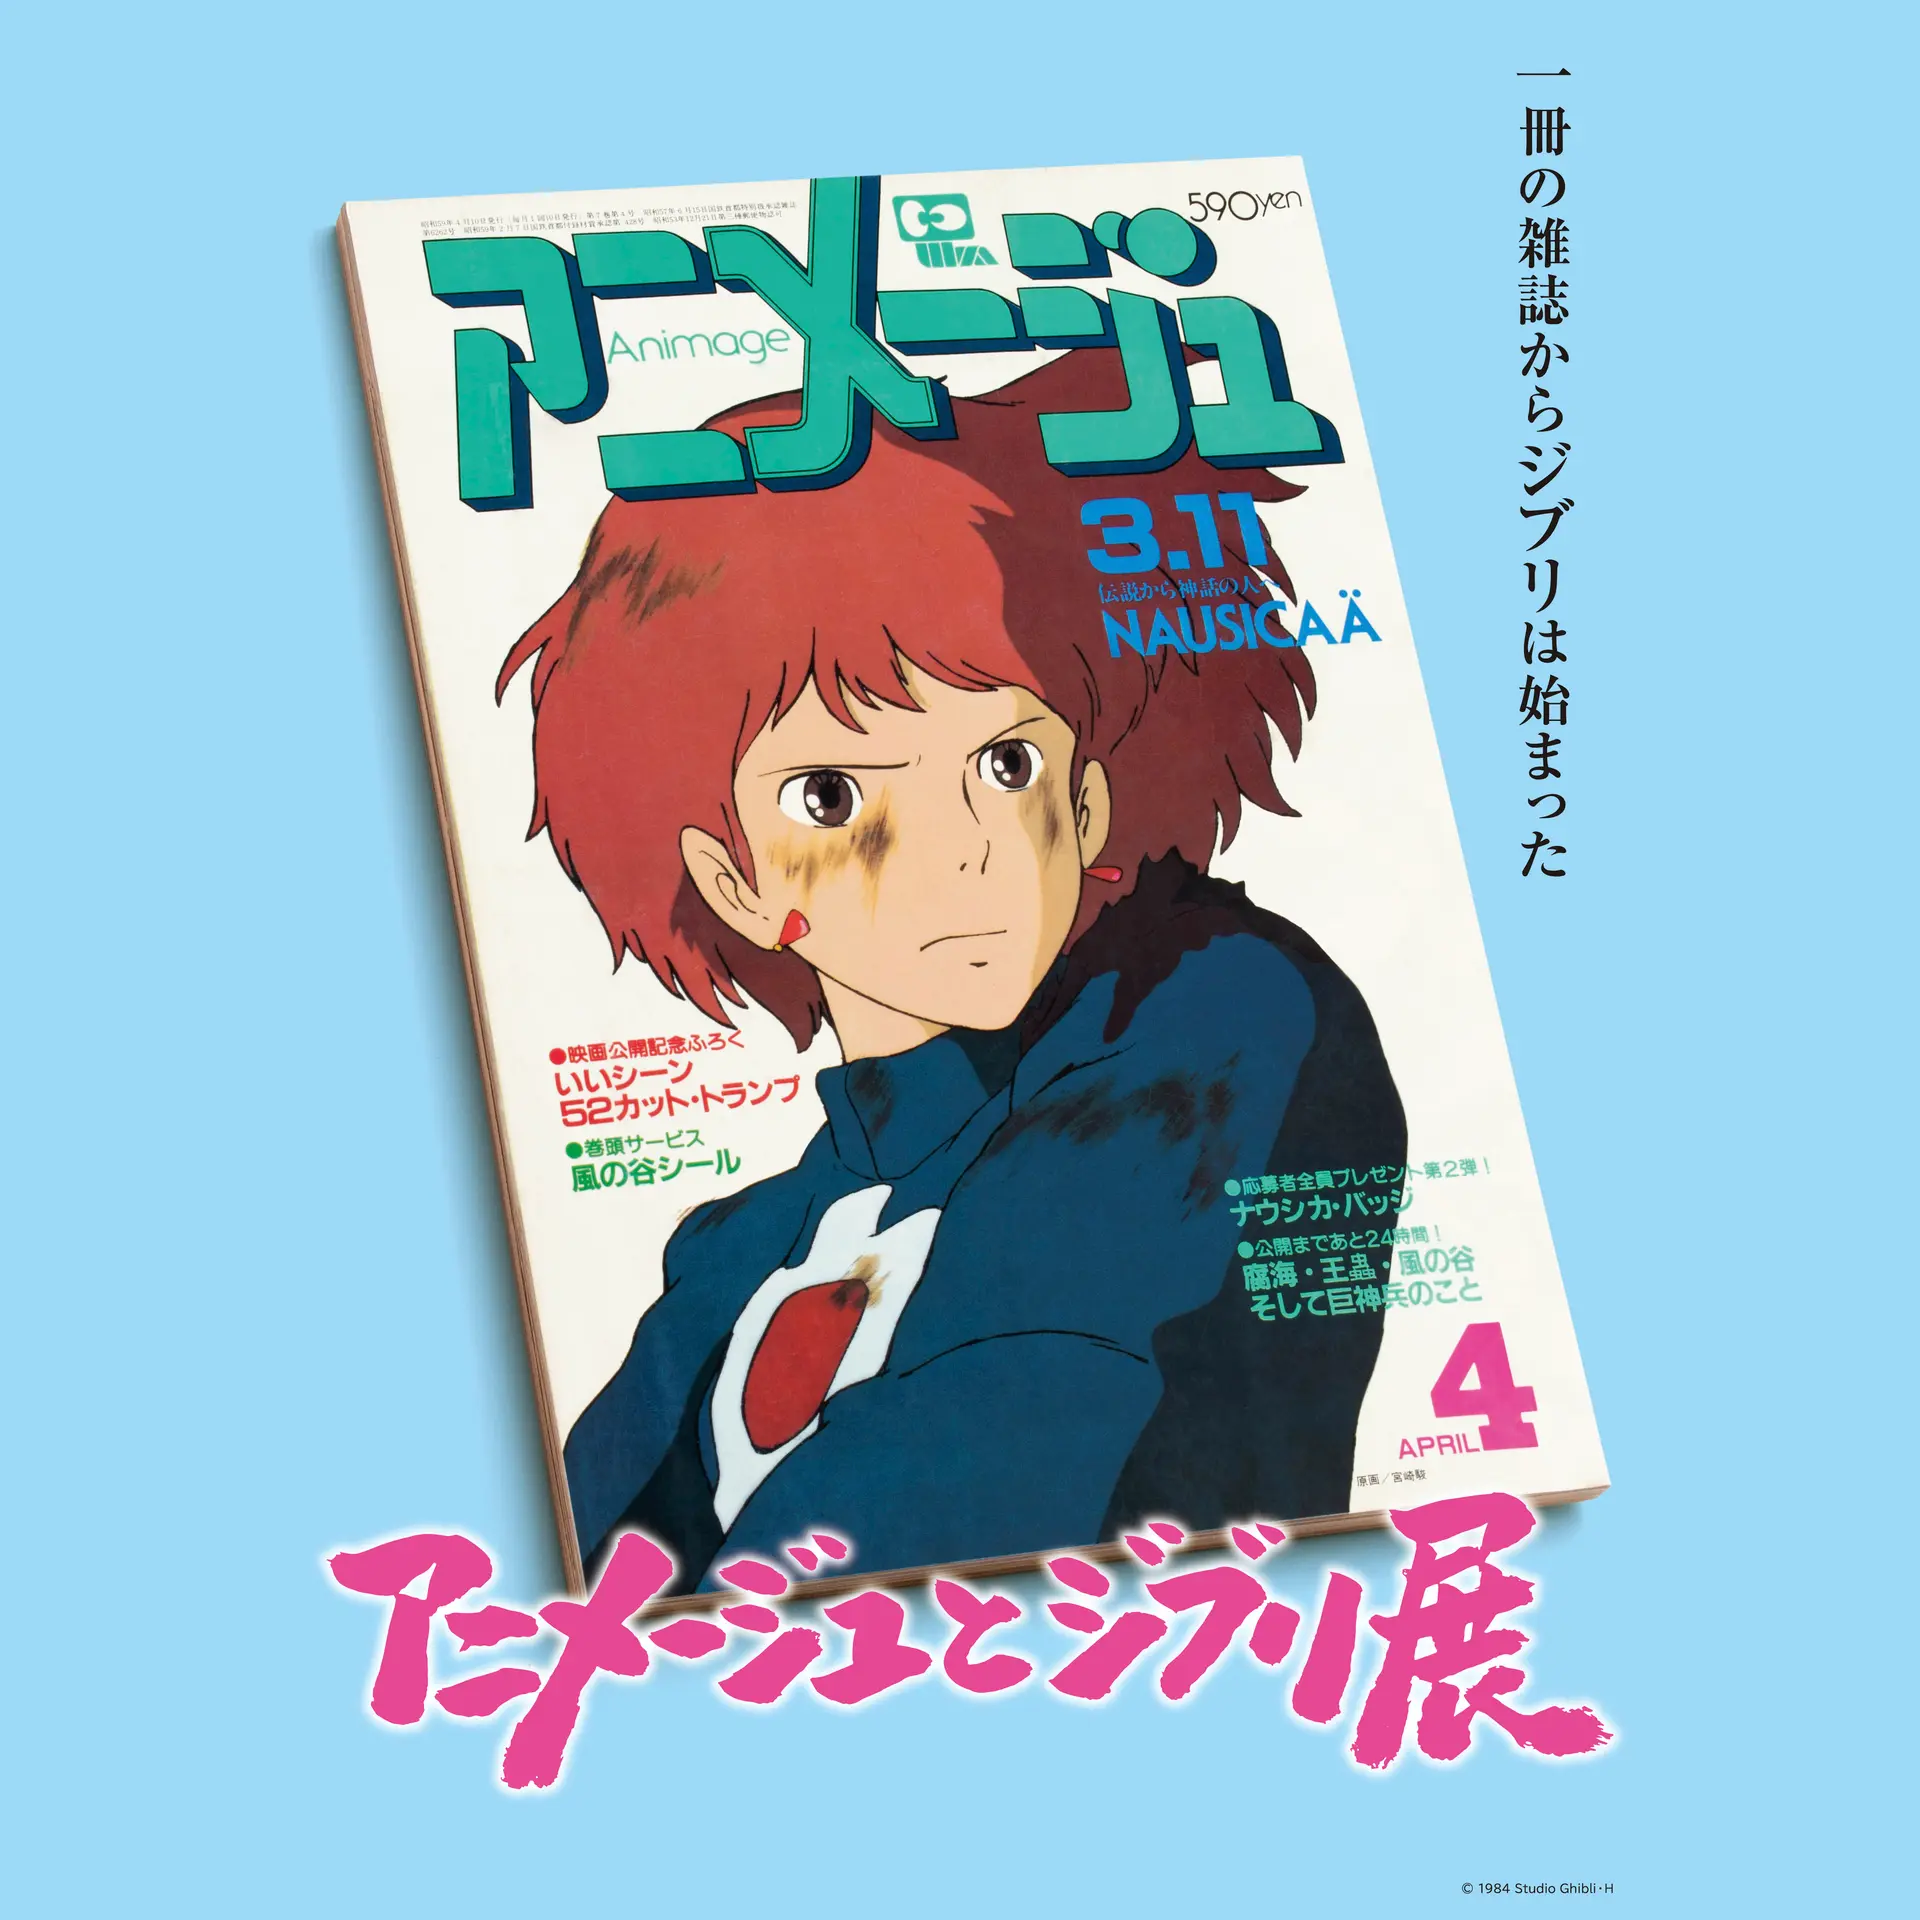 宮崎駿/ジブリ「風の谷のナウシカ」1984年初版/大型B1サイズポスター